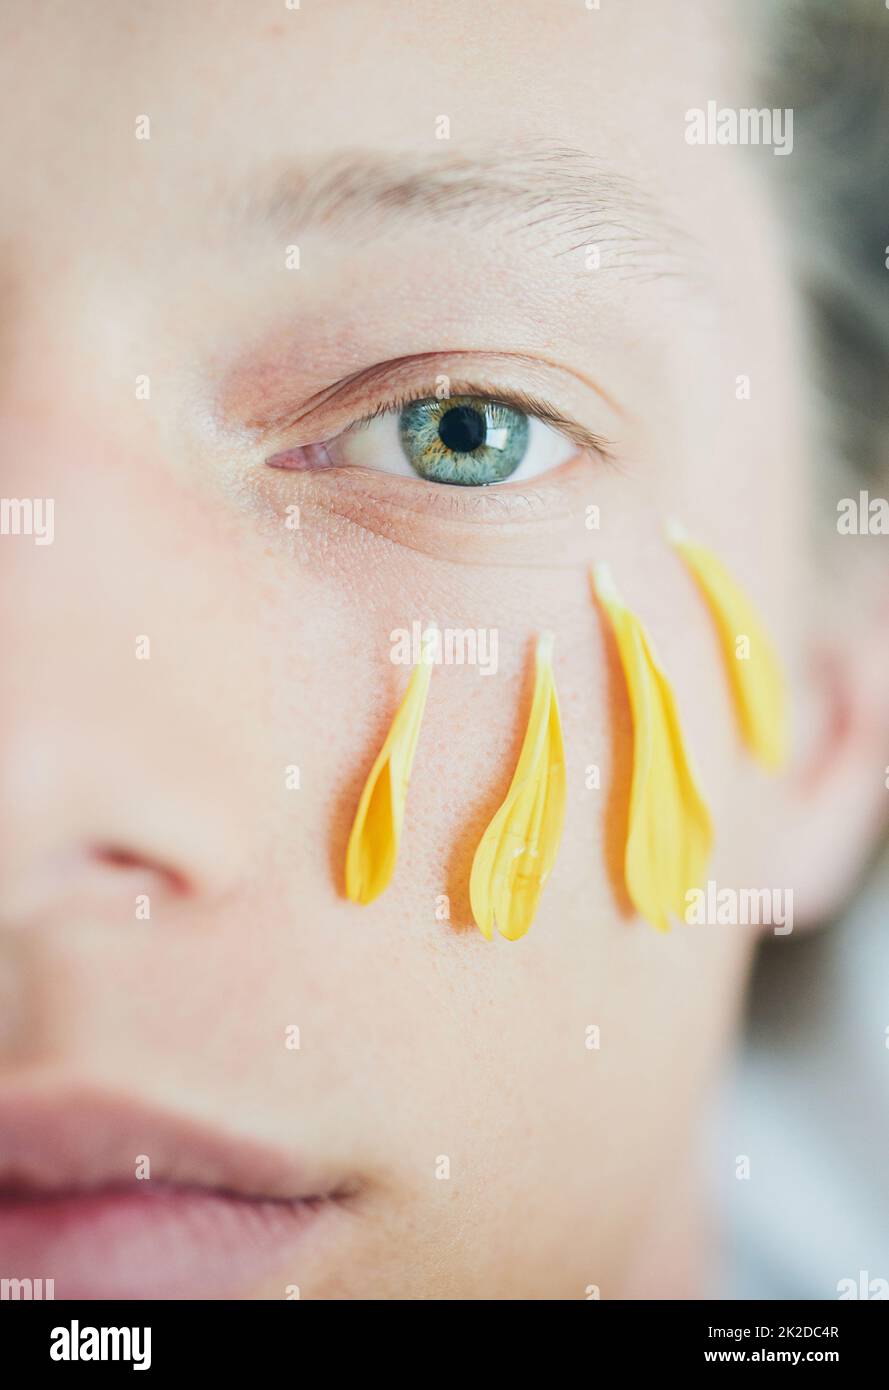 Schönheitsbehandlung. Ausgeschnittene Aufnahme eines jungen mannes mit Blütenblättern unter seinem Auge, während er auf die Kamera schaute. Stockfoto